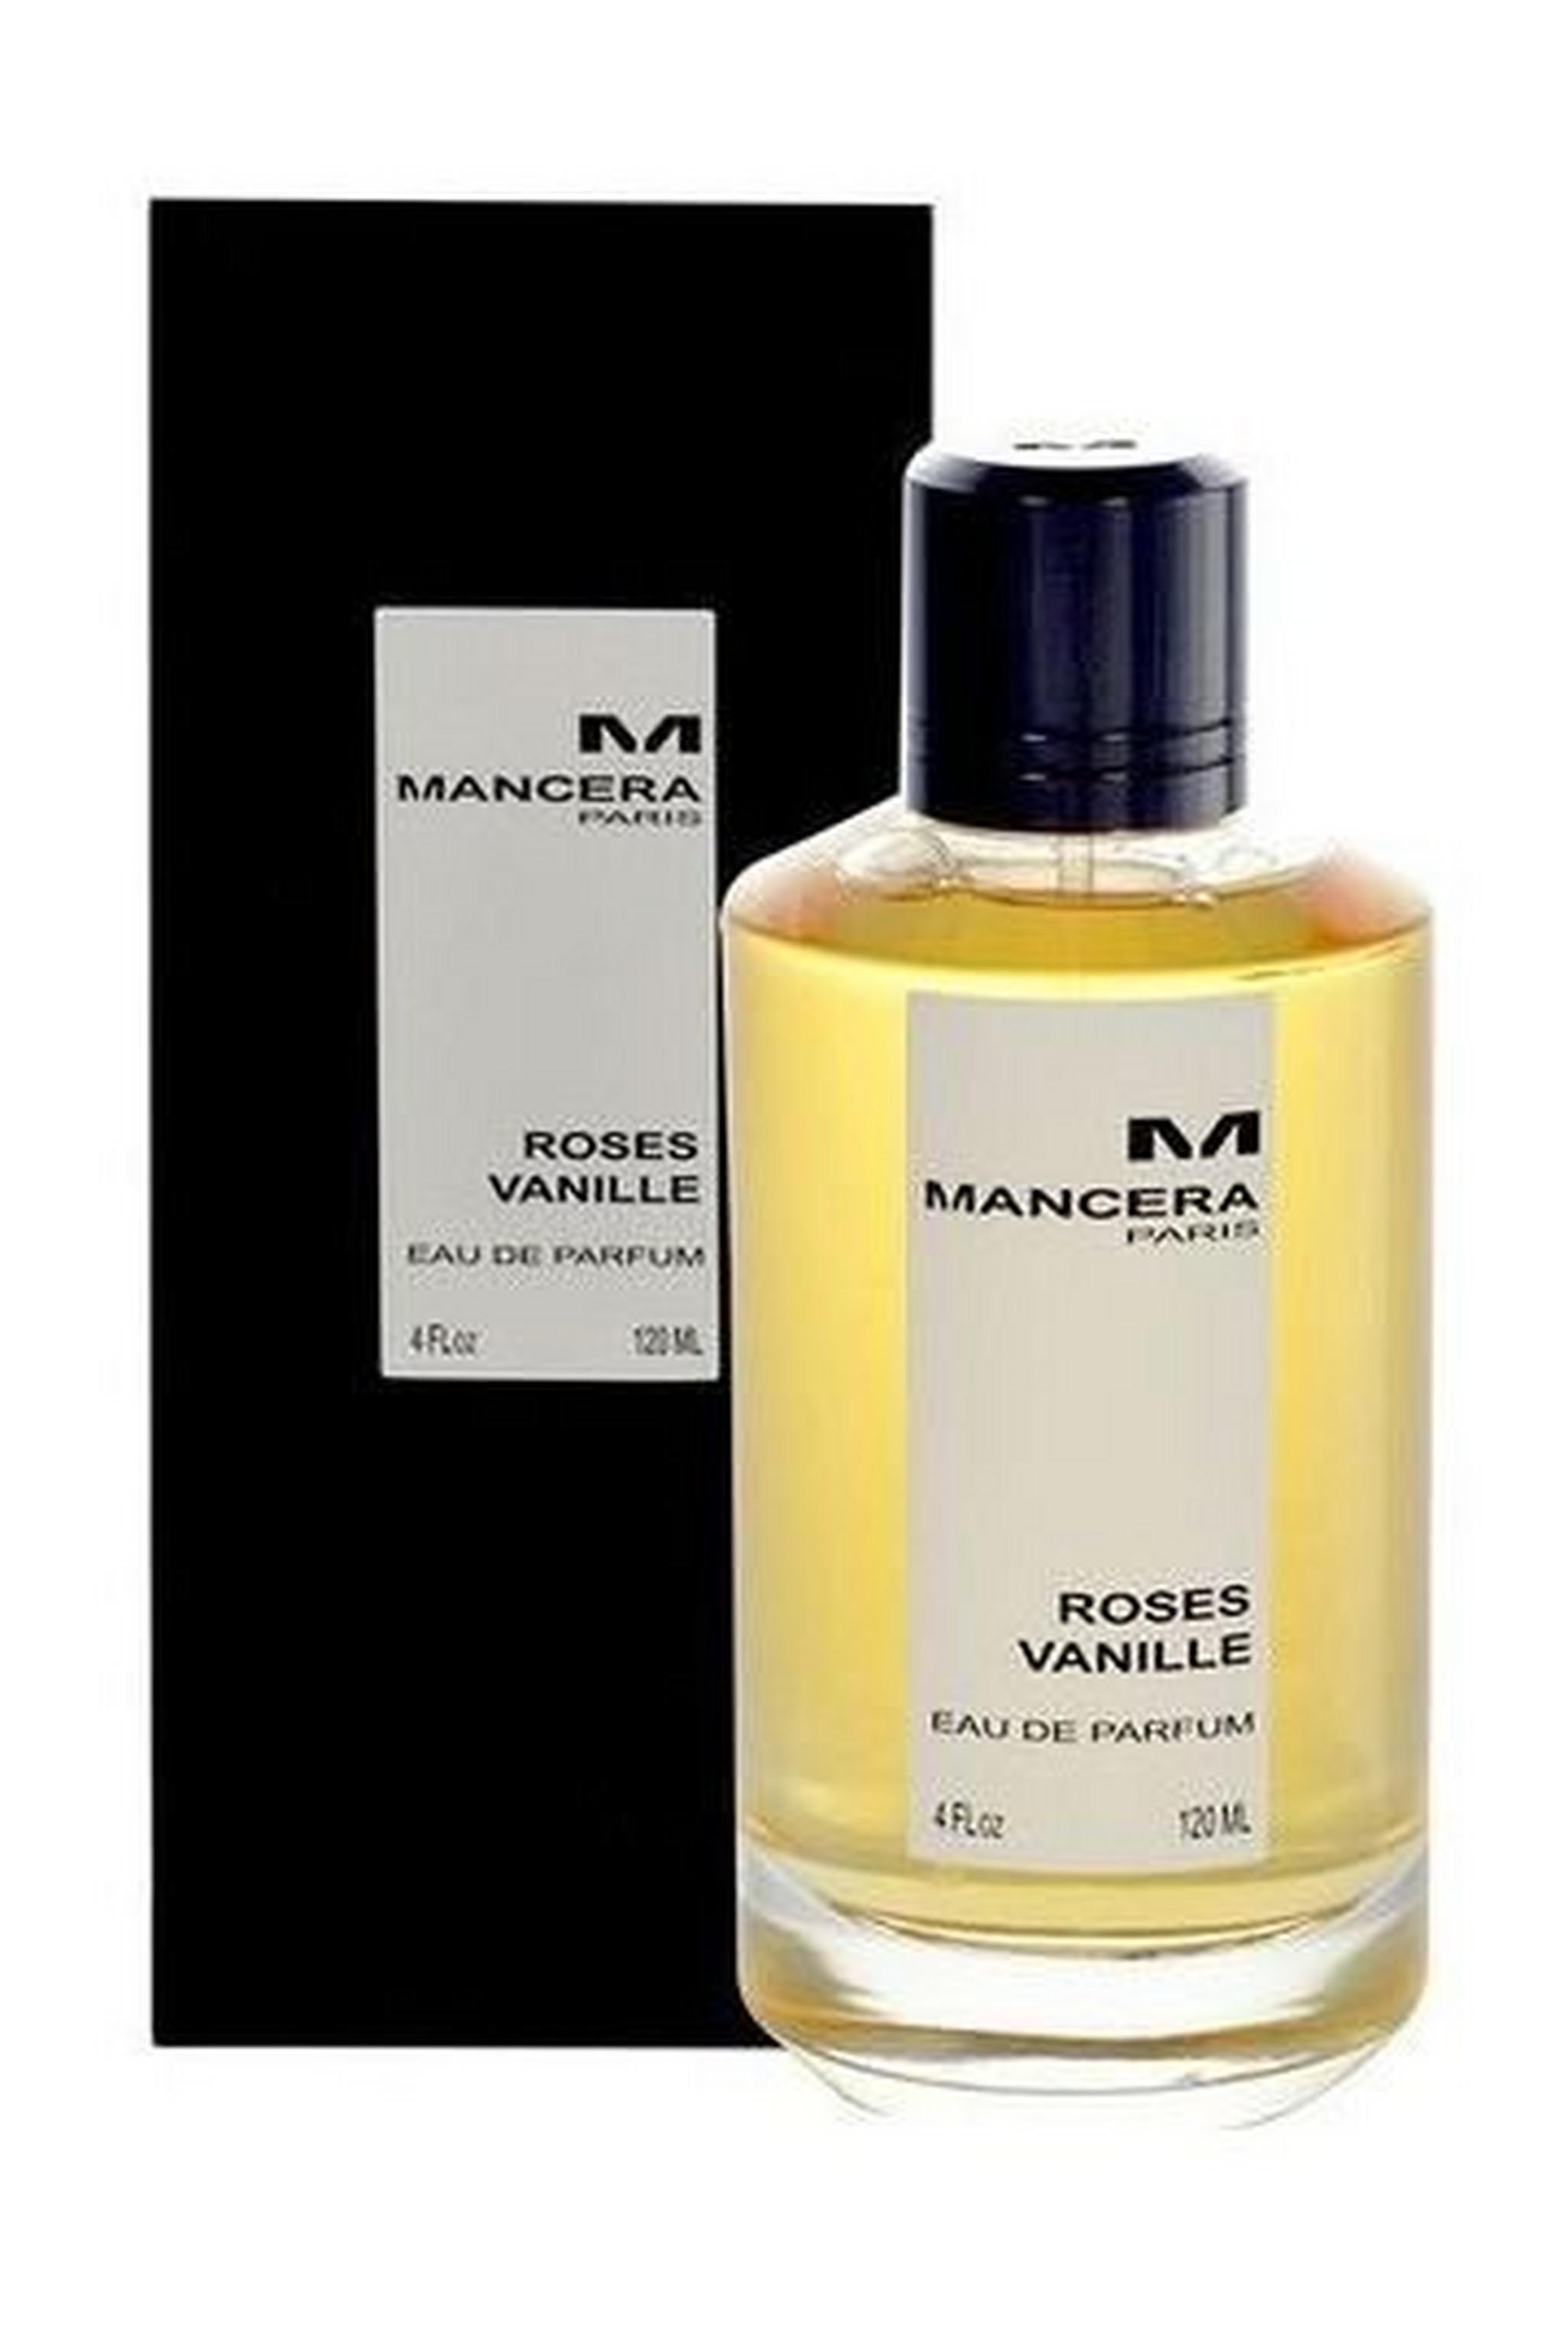 Roses Vanille by Mancera For Women 120 ML Eau de Parfum